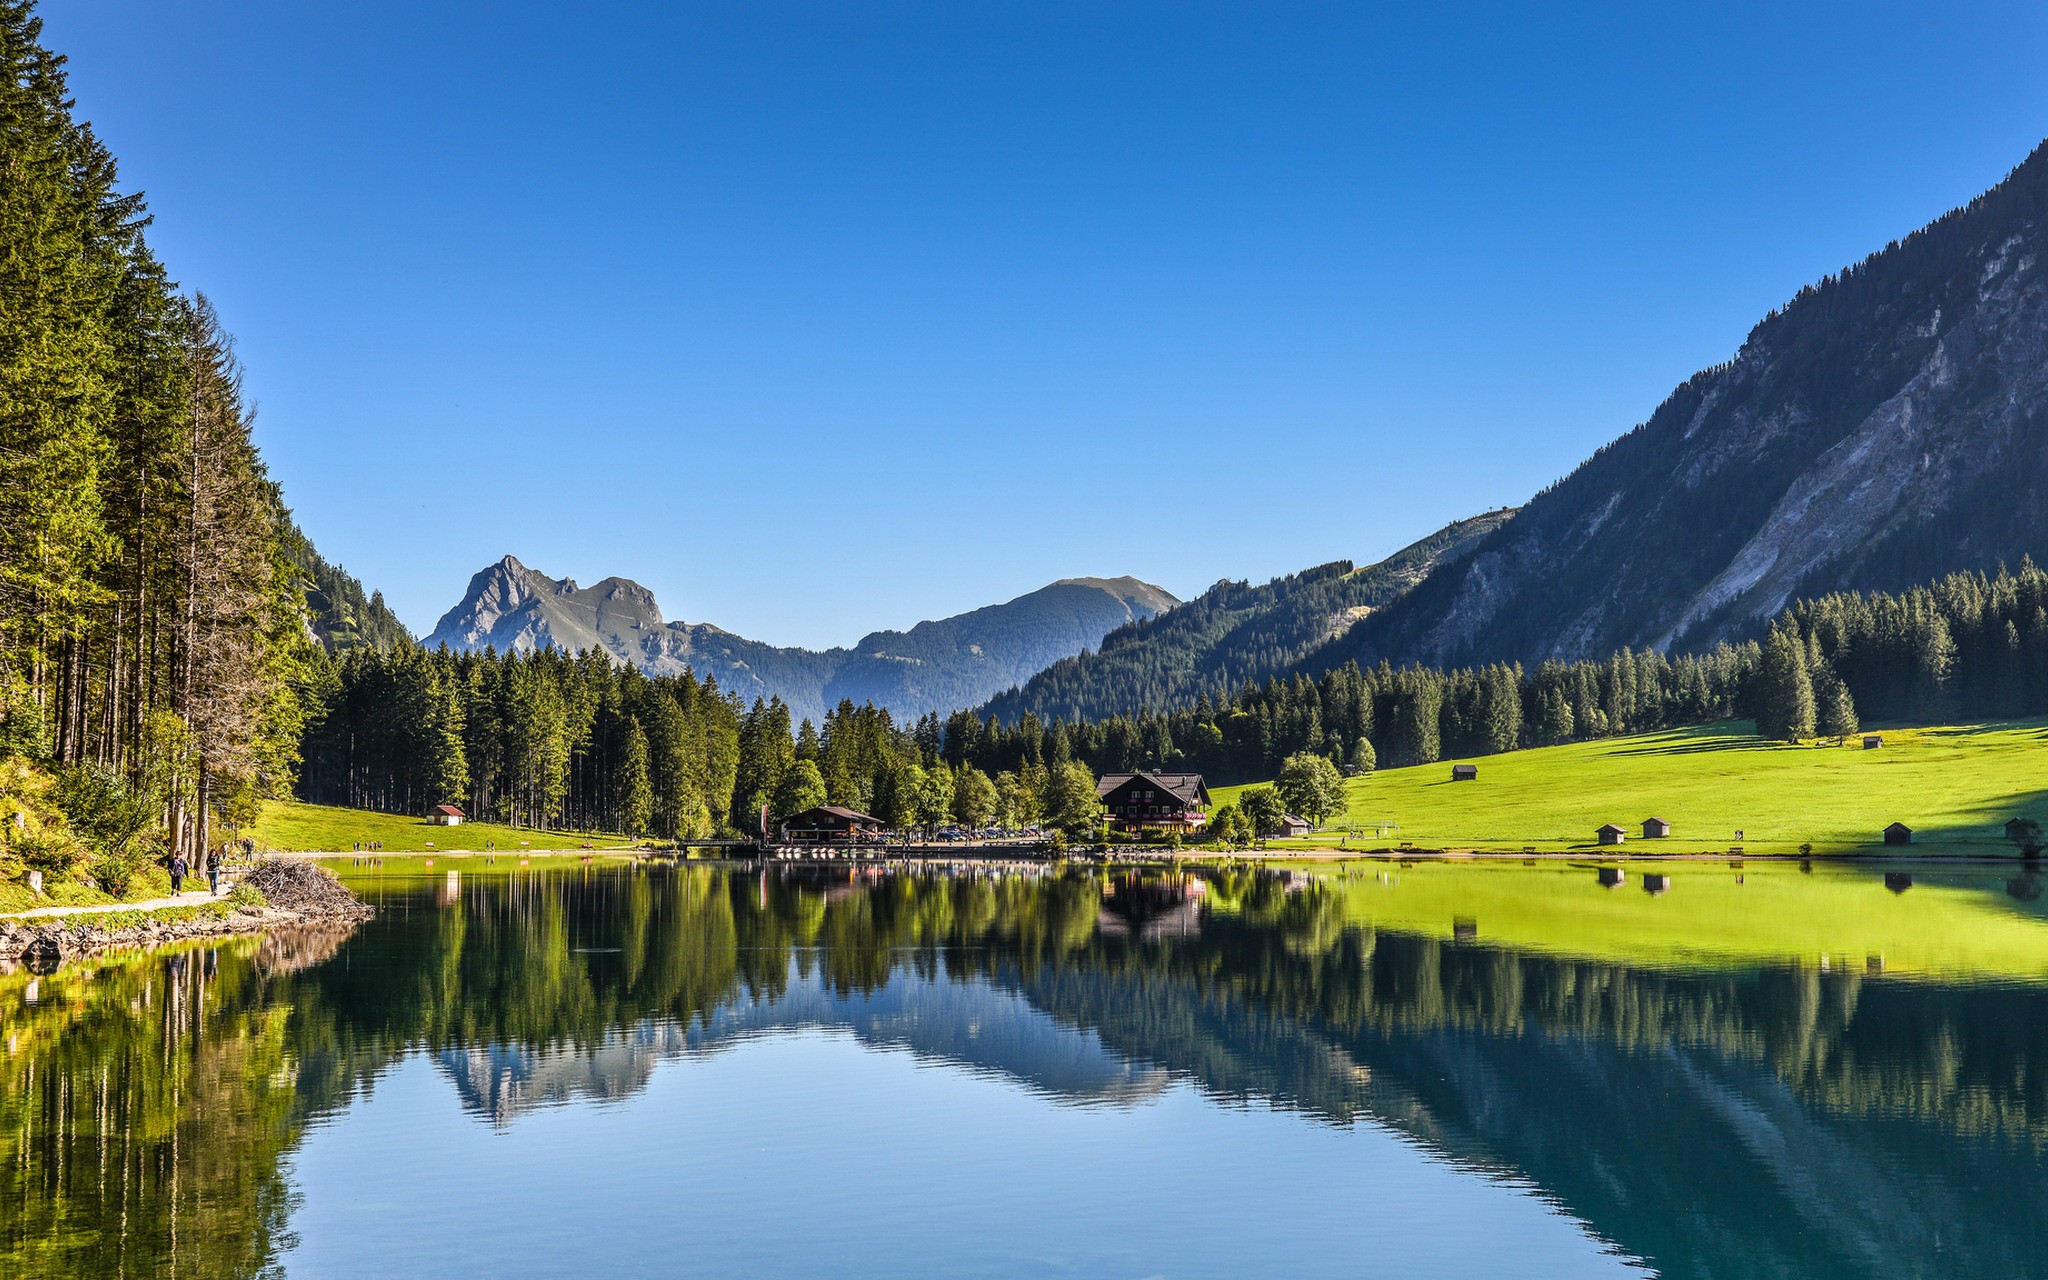 Картинка на обои высокого качества. Тироль Австрия горы. Альпы Австрия озеро. Озеро Тироль Австрия. Тироль Австрия пейзаж.